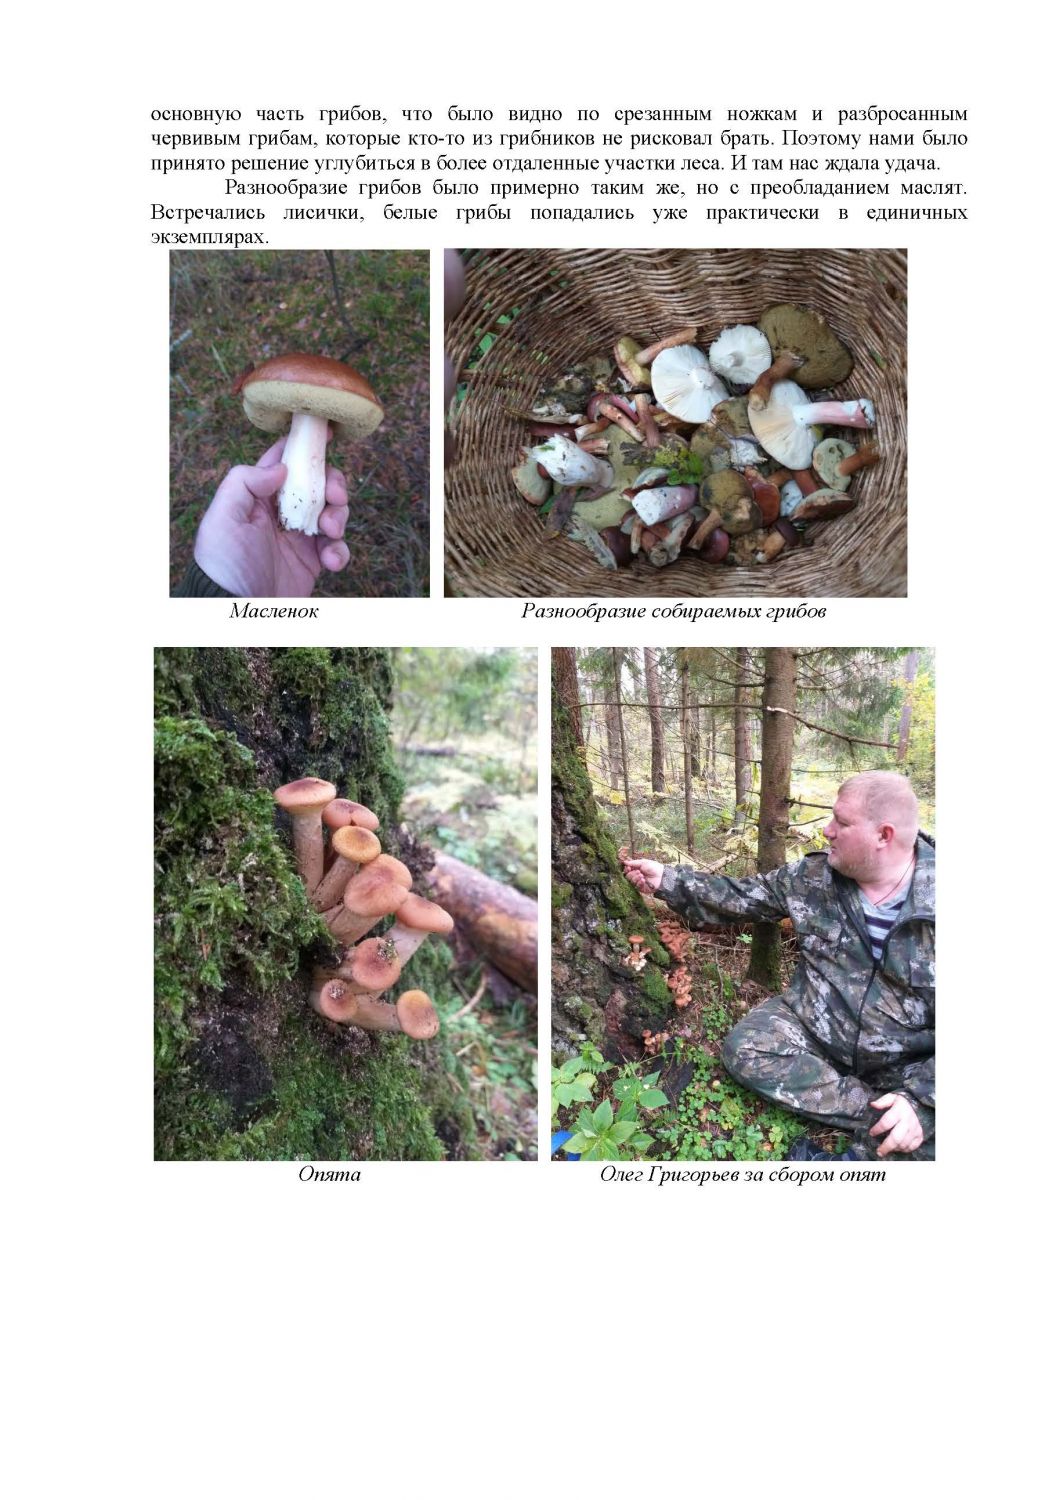 По следам грибных троп, или Повесть о похождениях грибников-любителей - фото 5